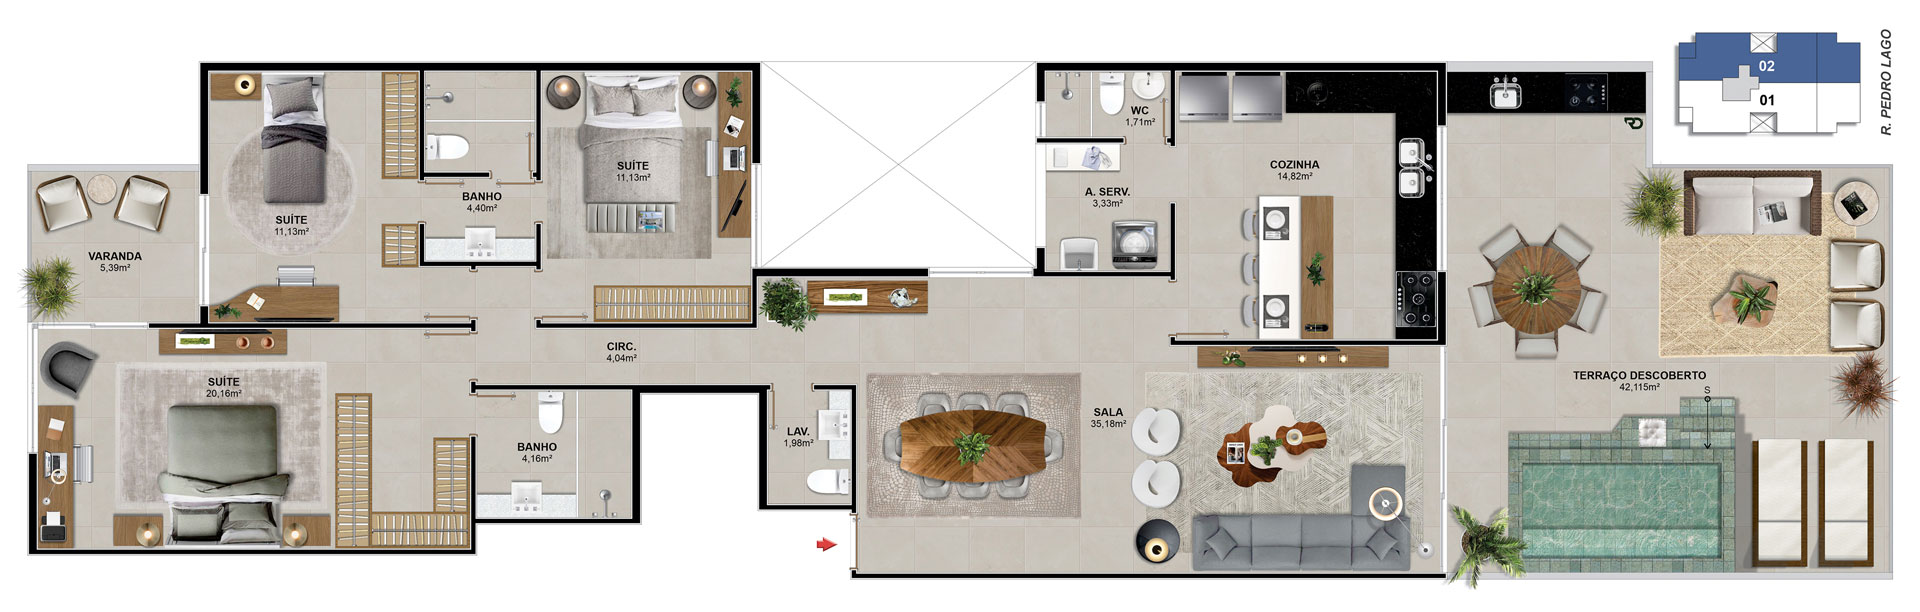 Cobertura 302 - 173,12 m²